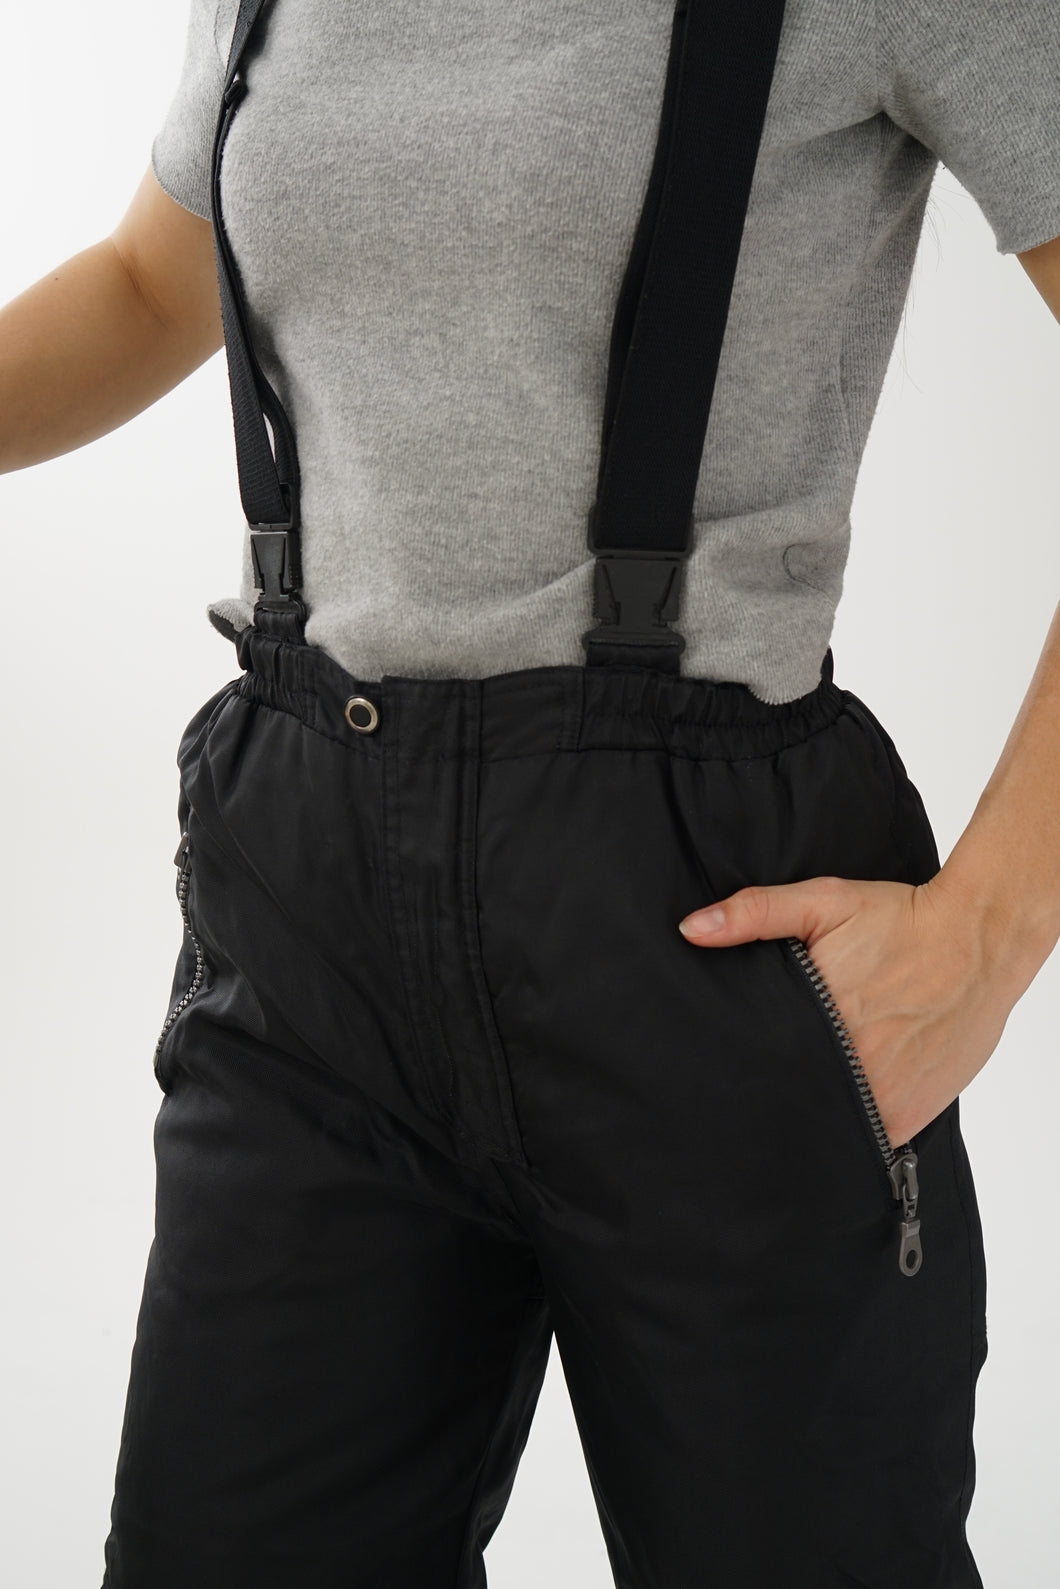 Pantalon de neige salopette Jupa Sport noir pour femme taille 14 ans (XS)